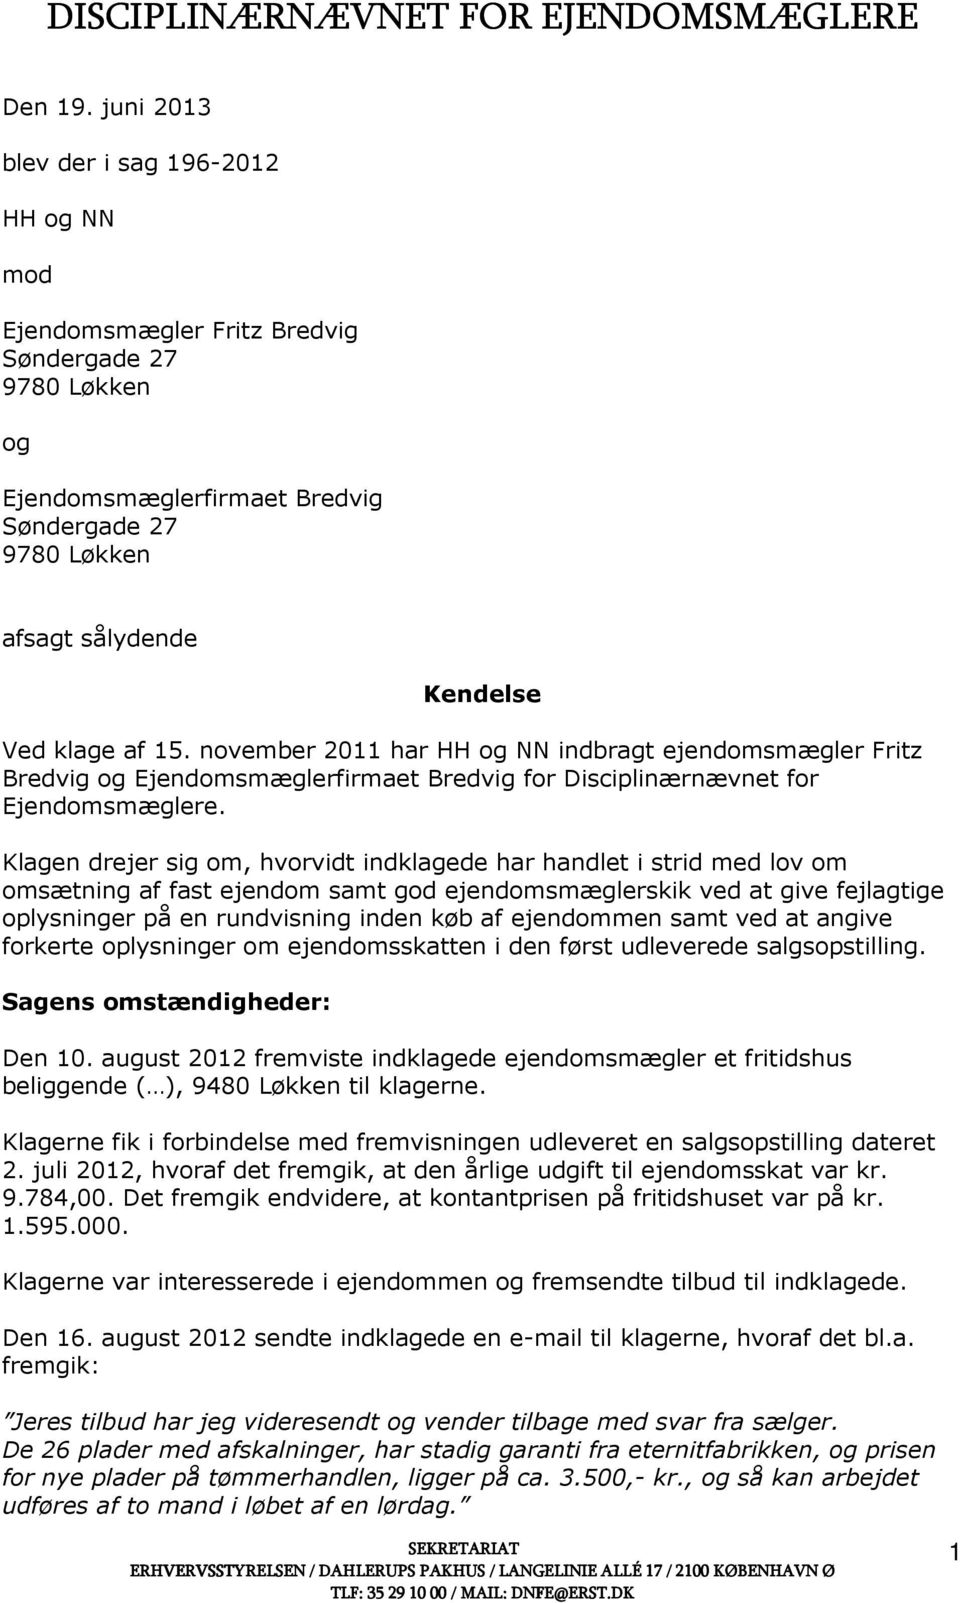 15. november 2011 har HH og NN indbragt ejendomsmægler Fritz Bredvig og Ejendomsmæglerfirmaet Bredvig for Disciplinærnævnet for Ejendomsmæglere.